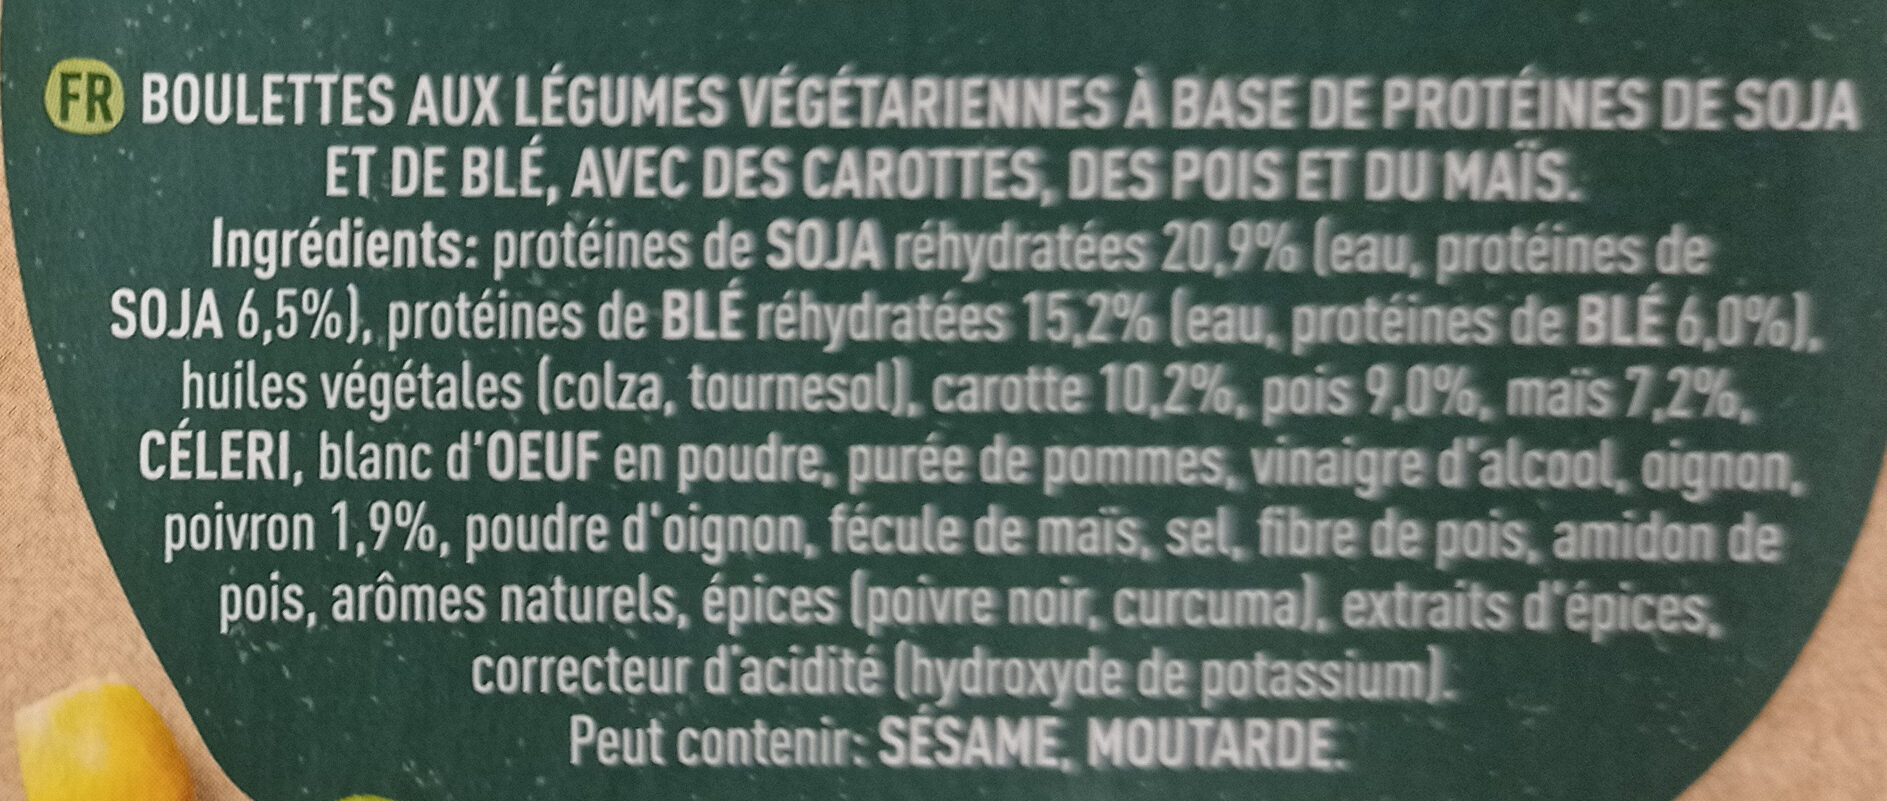 Boulettes aux Légumes - Ingrédients